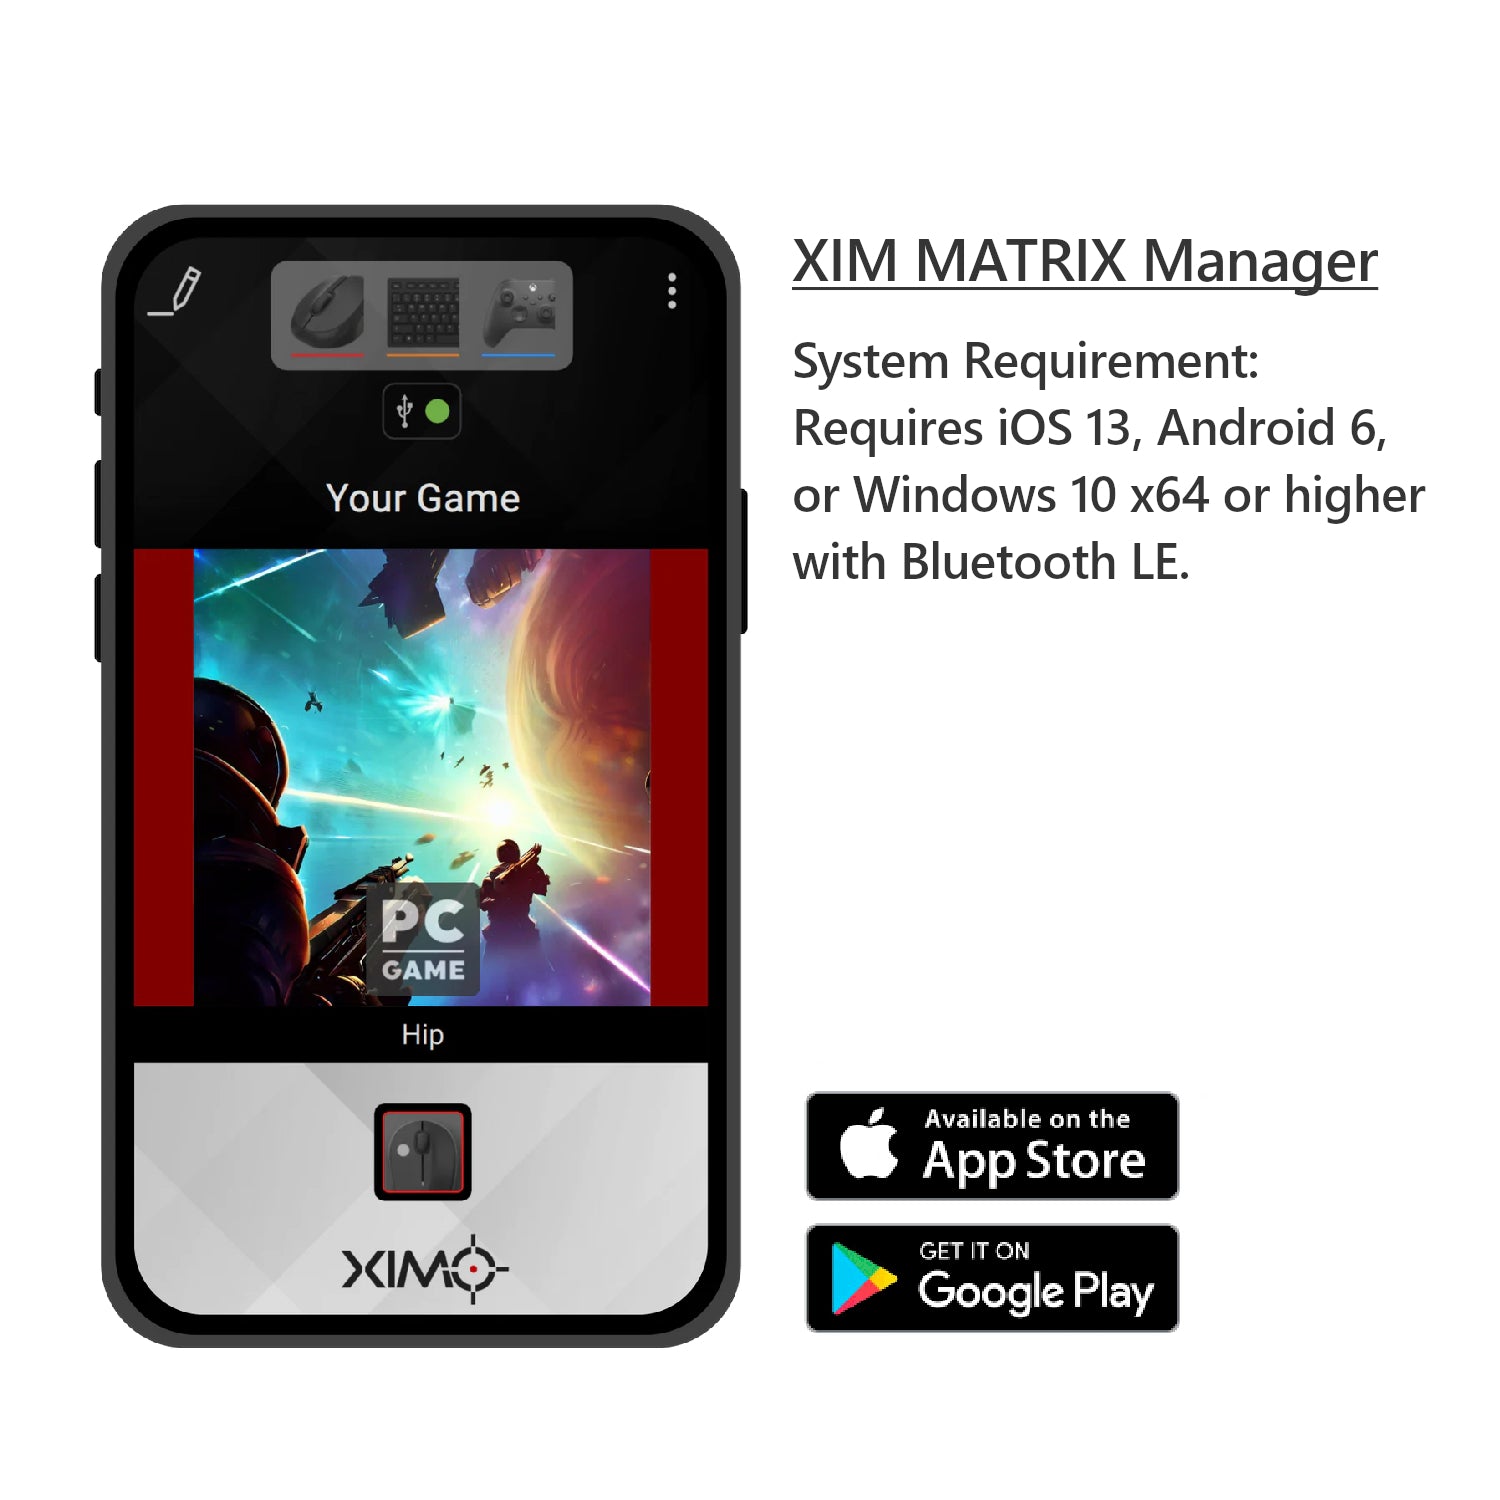 XIM MATRIX Manager First Run - XIM MATRIX User Guide